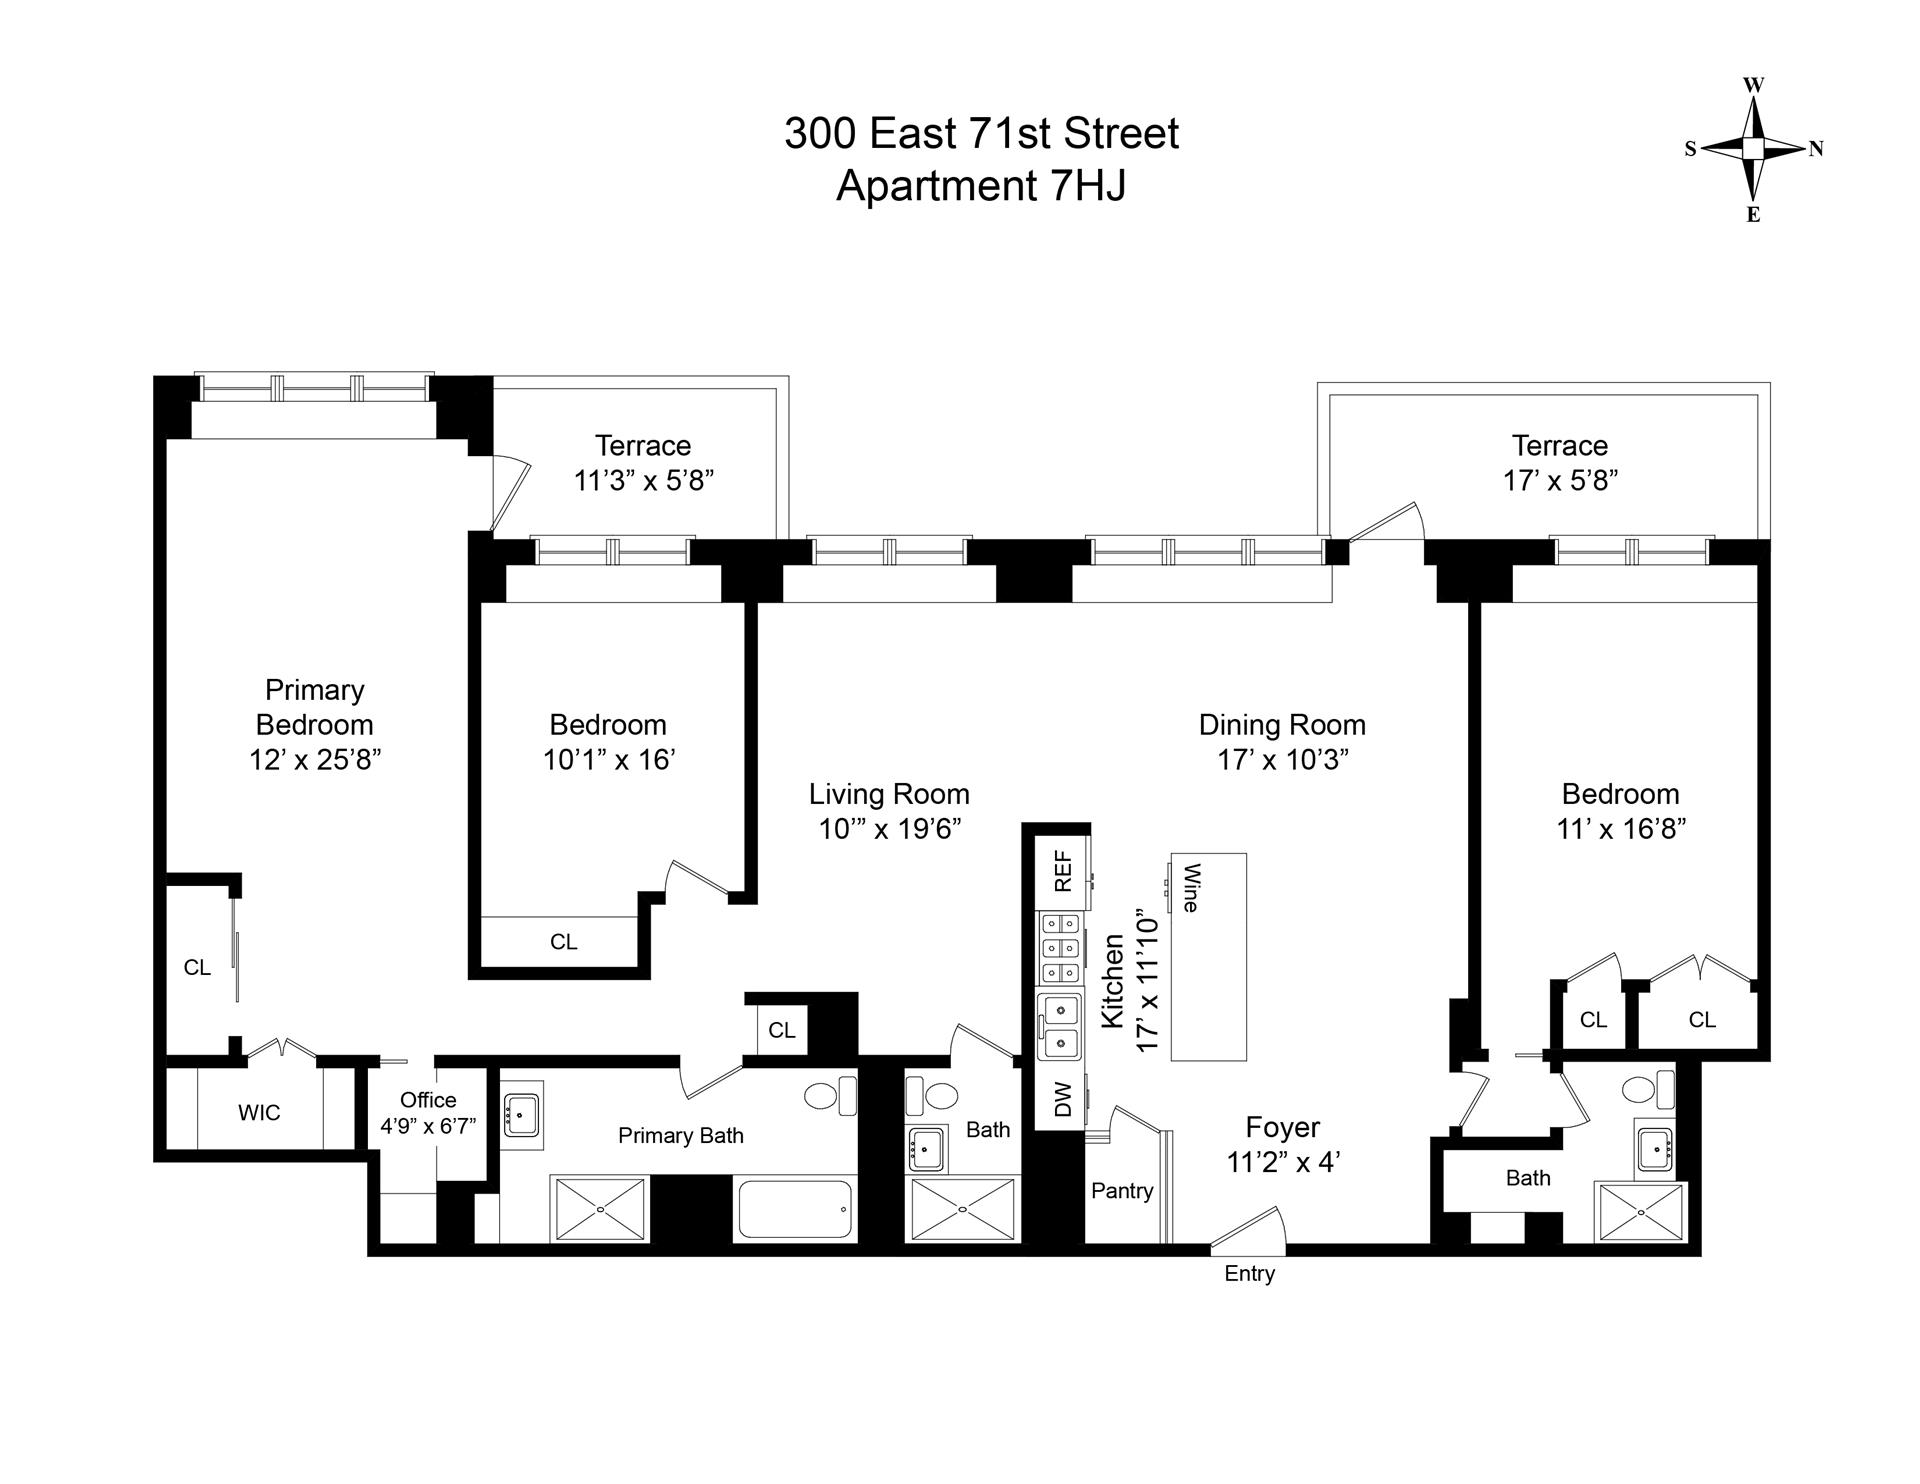 Floorplan for 300 East 71st Street, 7HJ